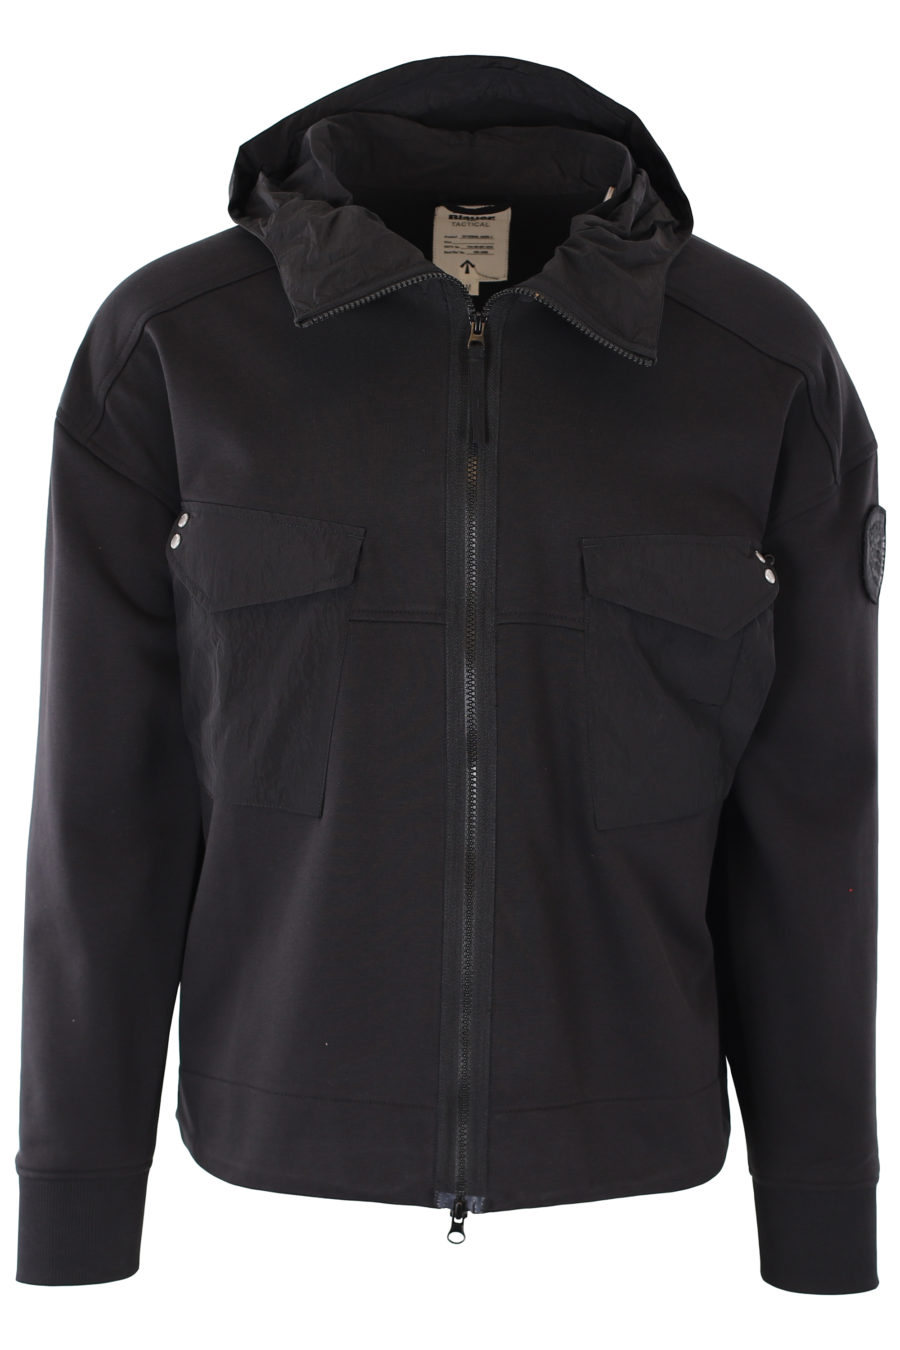 Schwarze Trainingsjacke mit Kapuze und Taschen - IMG 1164